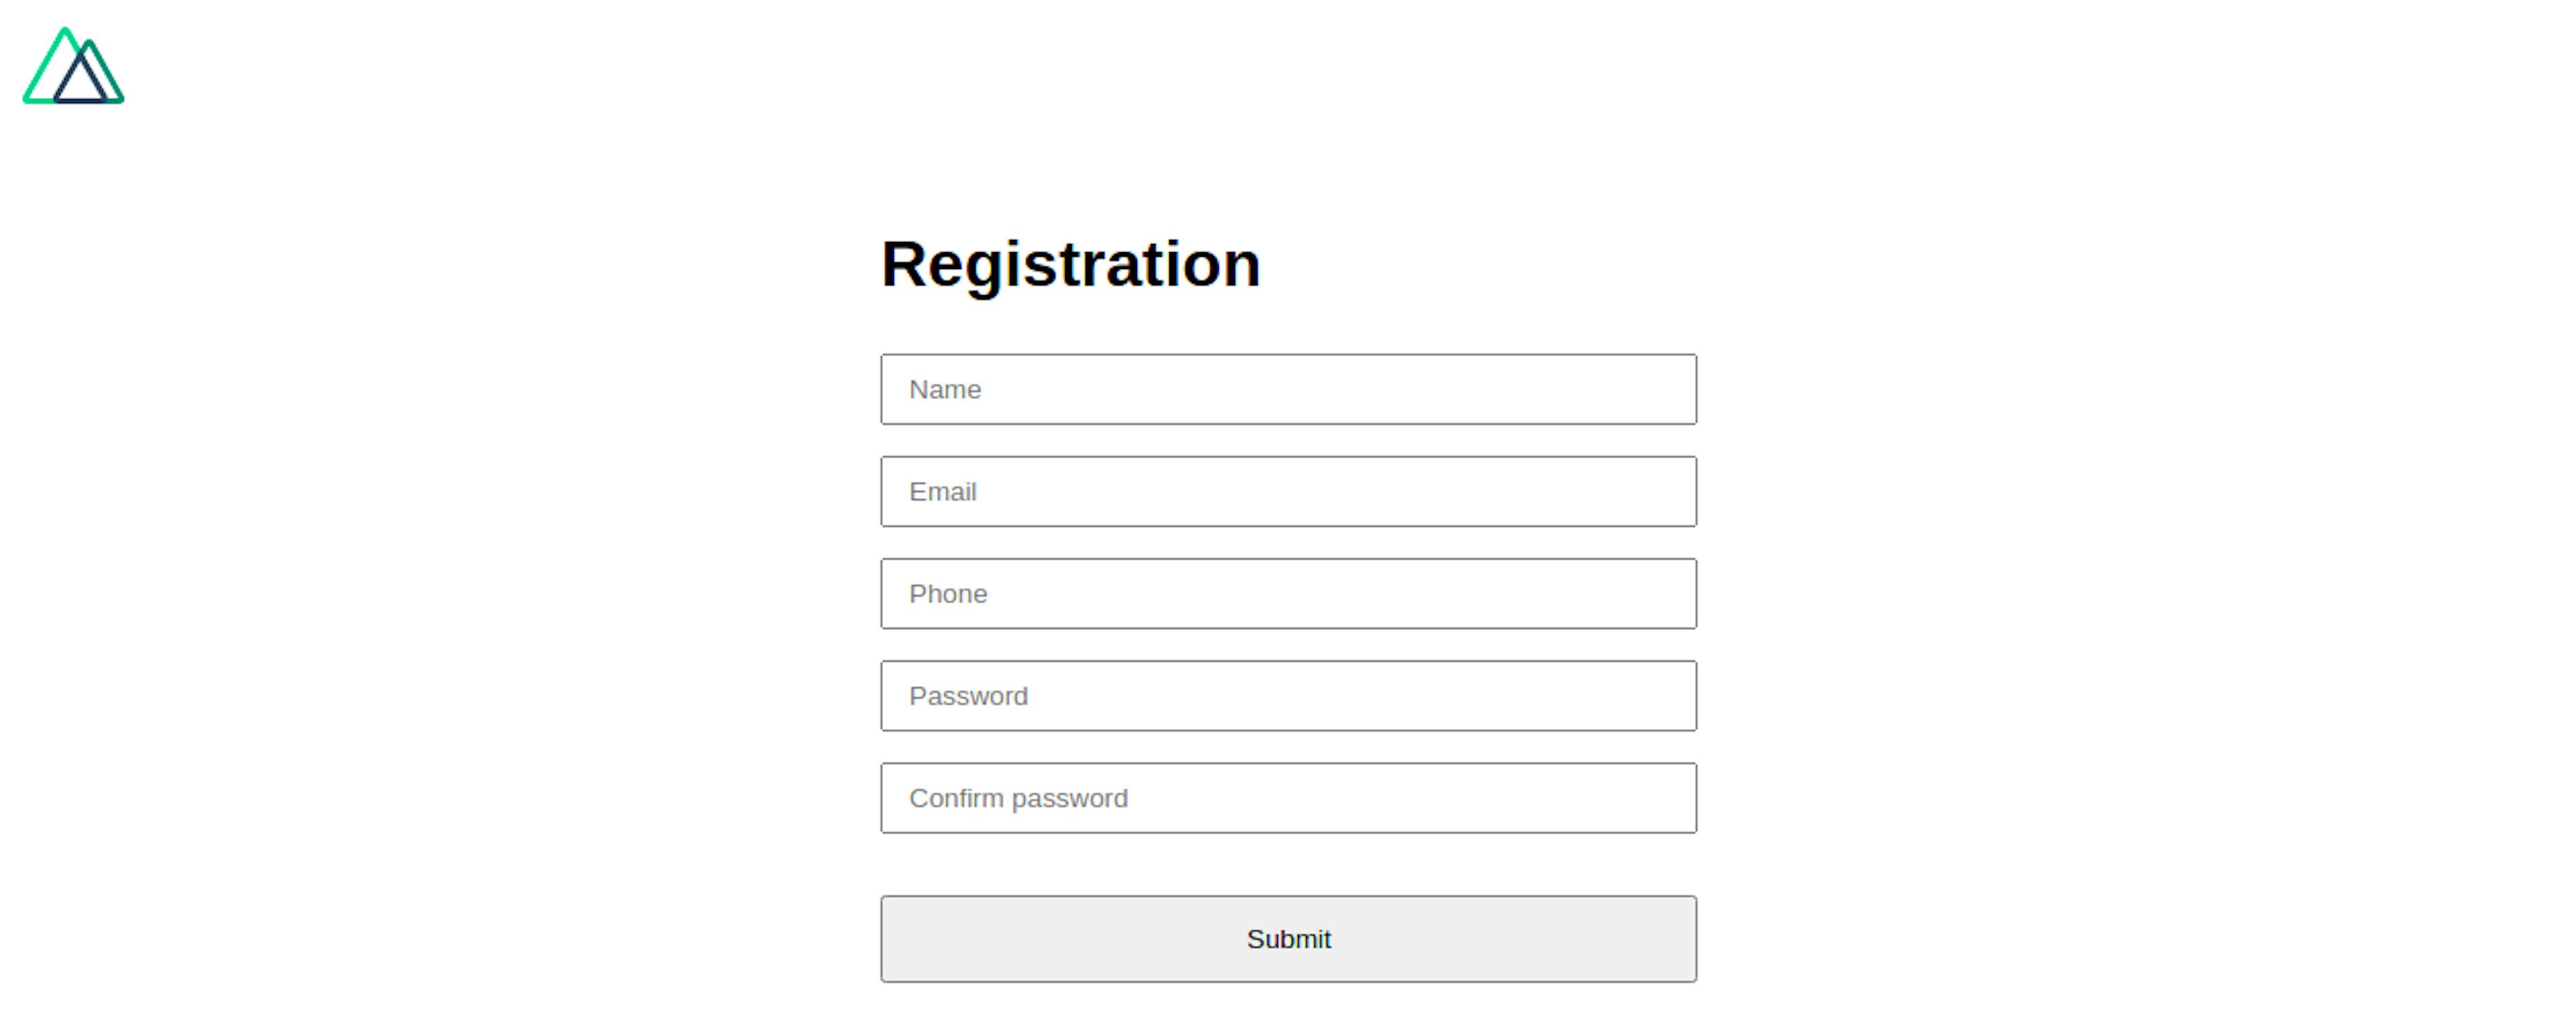 Registration Form with Vue.js.